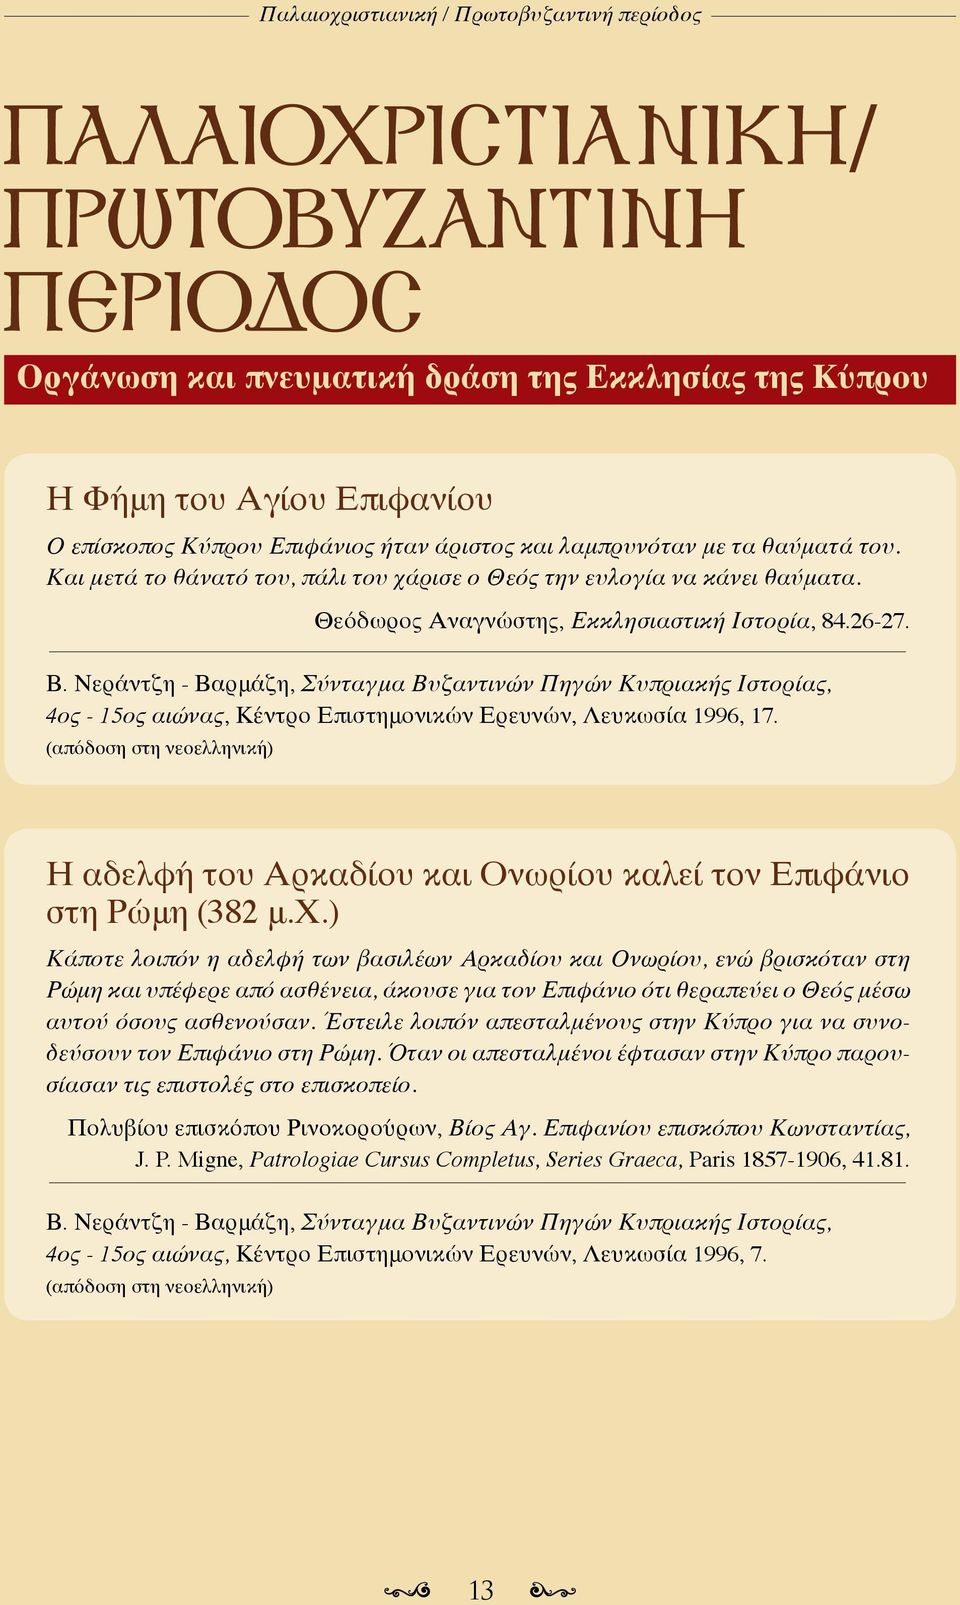 Νεράντζη - Βαρμάζη, Σύνταγμα Βυζαντινών Πηγών Κυπριακής Ιστορίας, 4ος - 15ος αιώνας, Κέντρο Επιστημονικών Ερευνών, Λευκωσία 1996, 17.